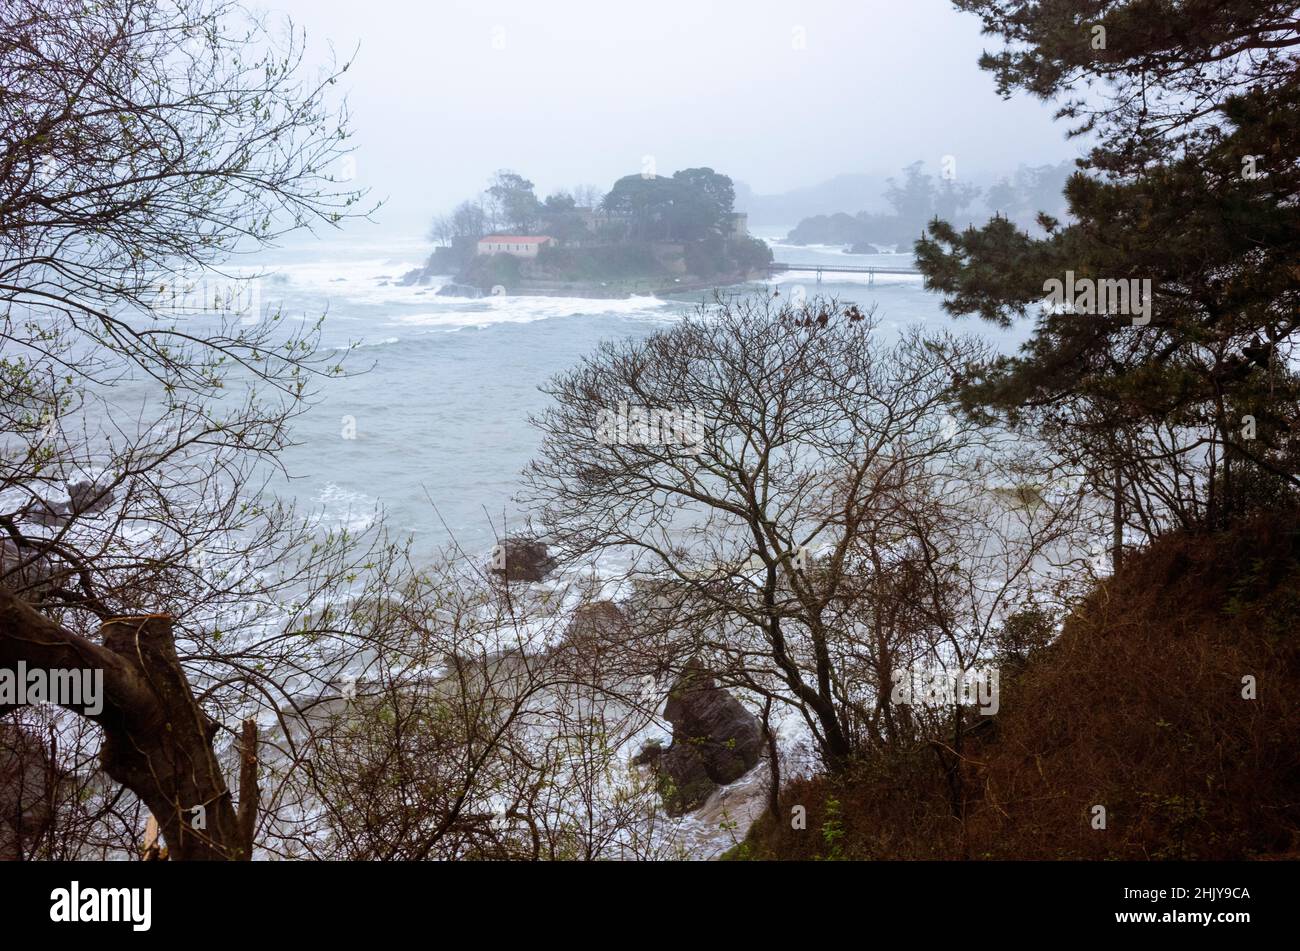 Oleiros, provincia de A Coruña, Galicia, España - 11 de febrero de 2020 : Castillo de Santa Cruz en el islote de Santa Cristina en una noche de invierno enfullada. Foto de stock